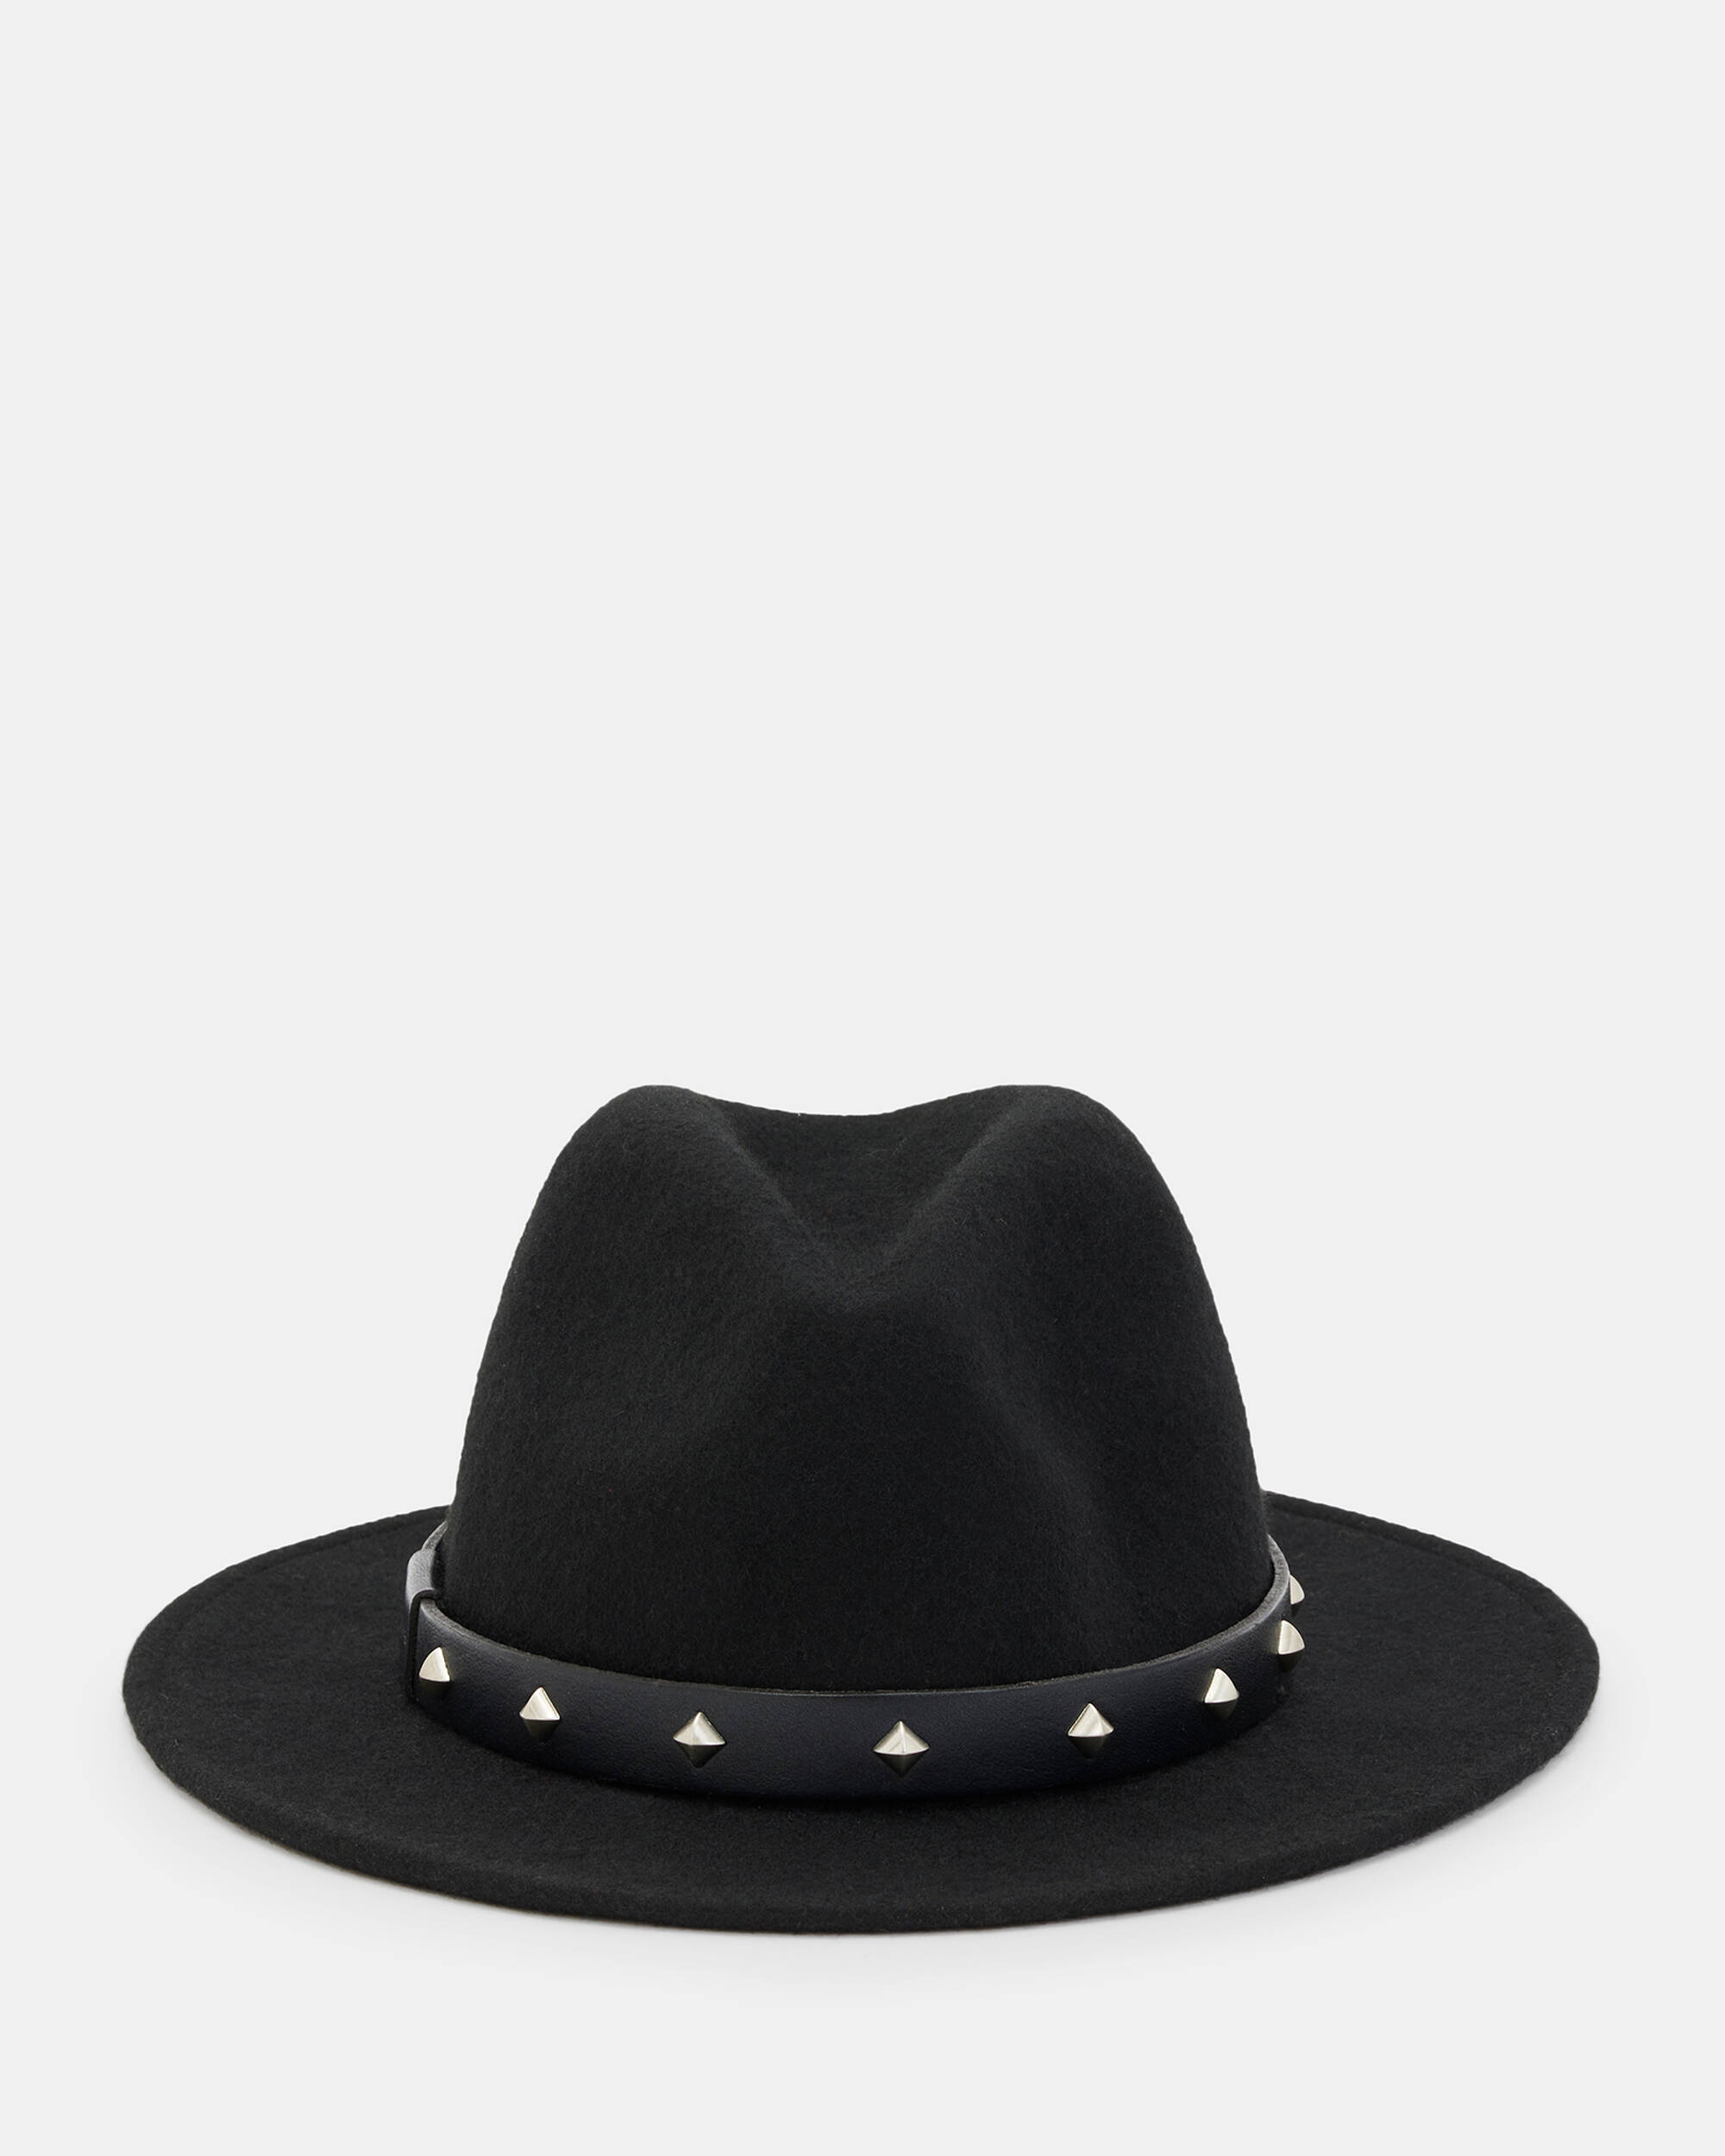 Maxie Studded Fedora Hat  large image number 2